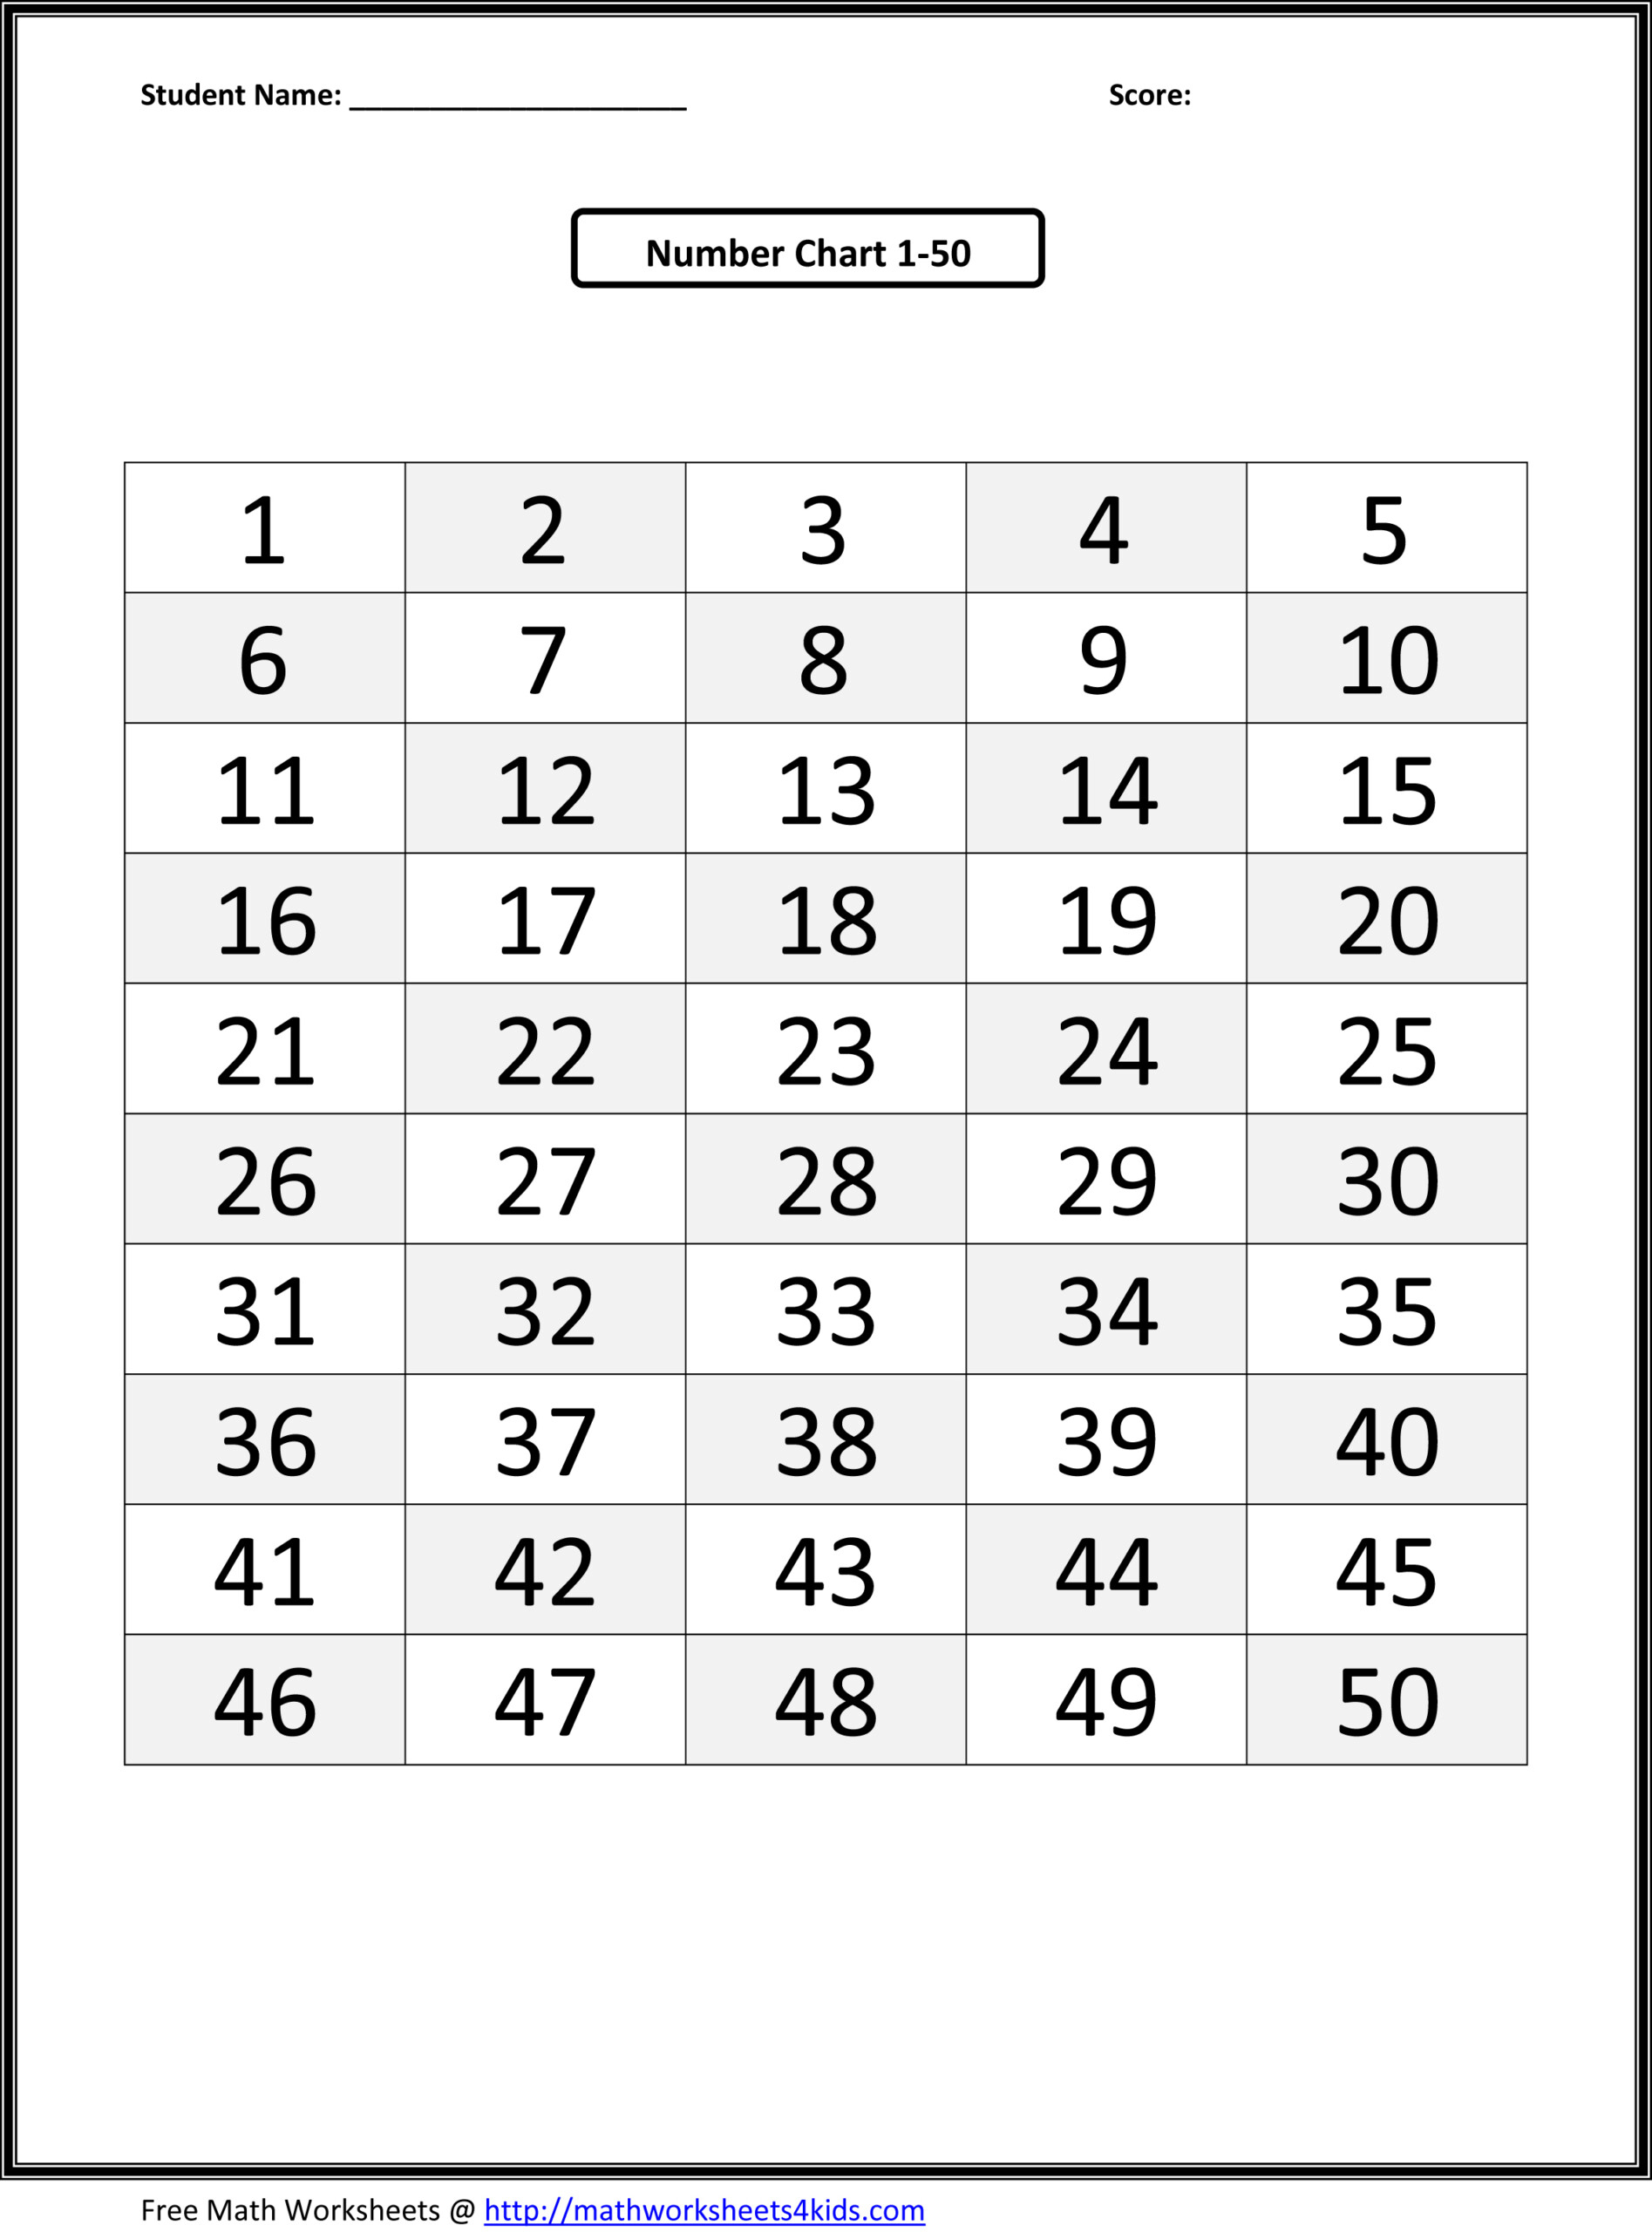 Number Tracing Worksheets 1 30 NumbersWorksheet